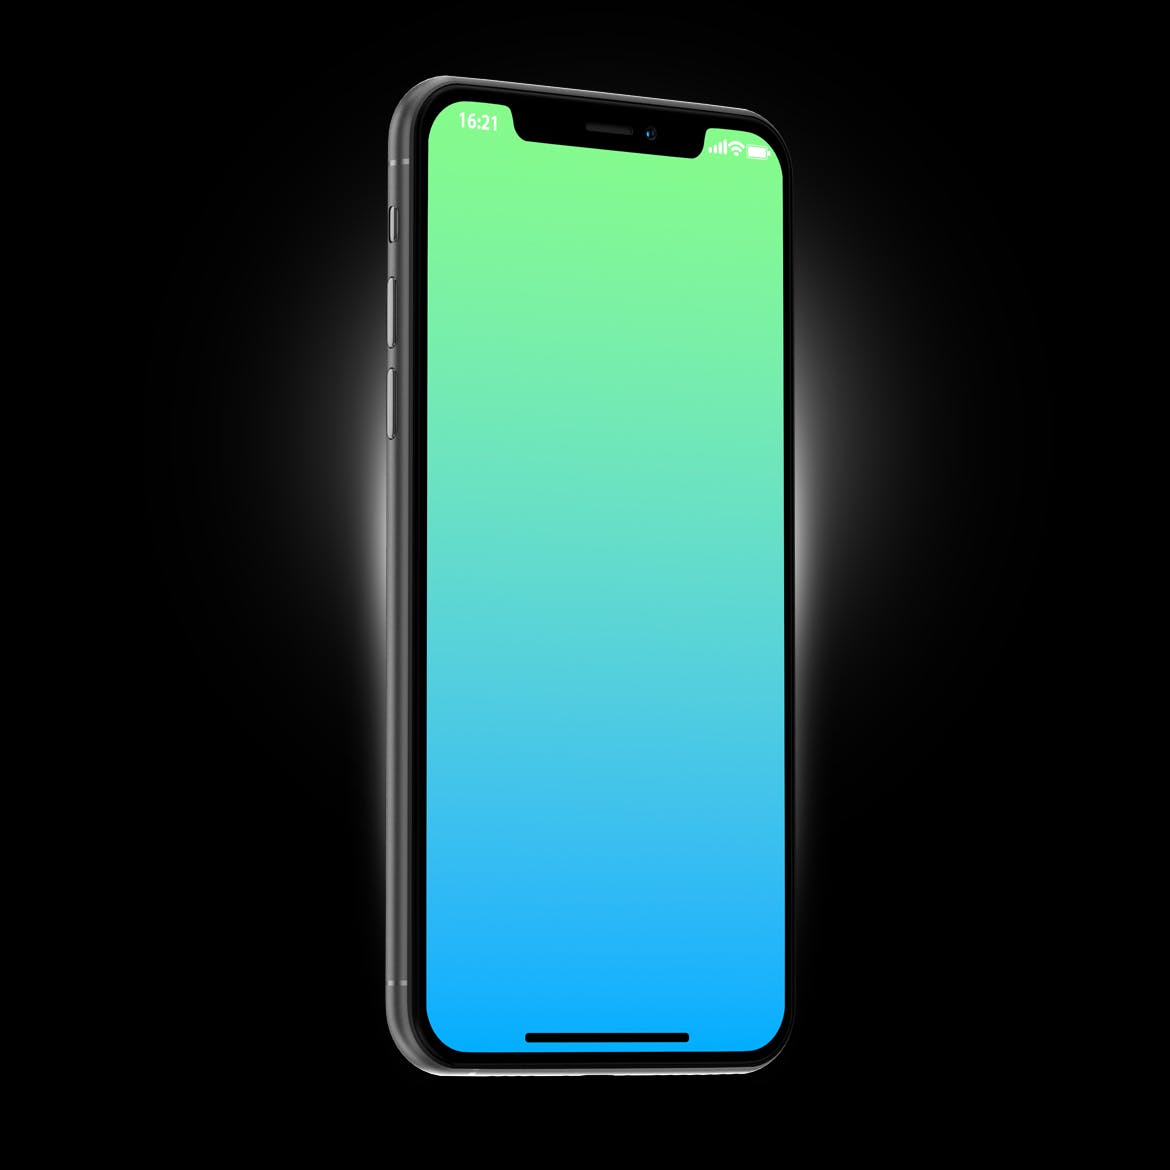 黑色iPhone 11 Pro Max智能手机APP设计预览第一素材精选样机 Phone 11 Black PSD Mockups插图(4)